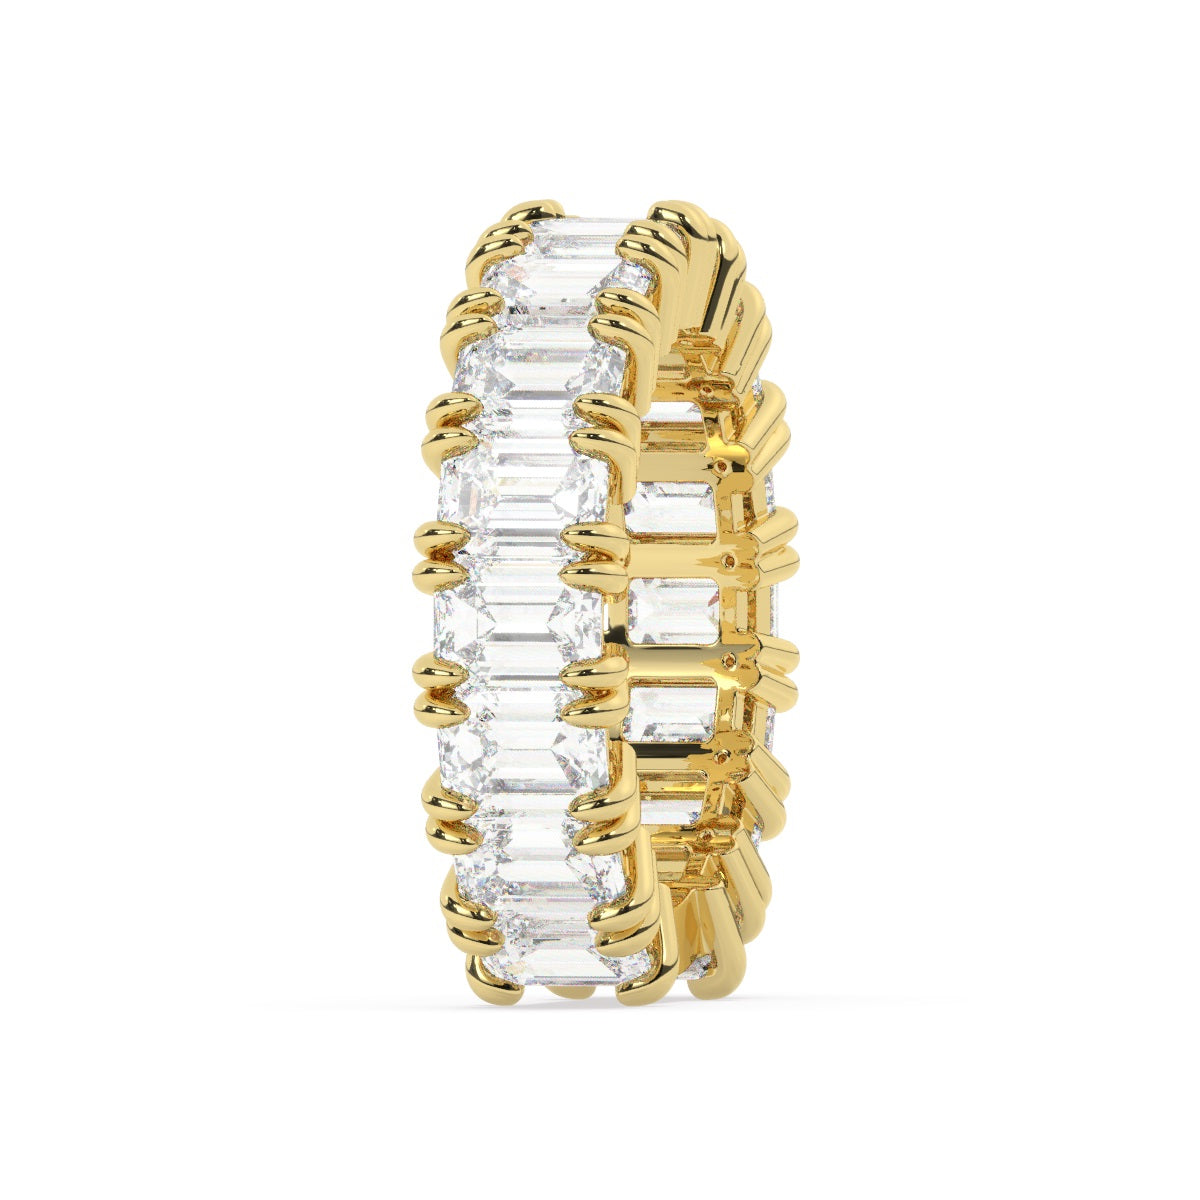 14k White Gold Diamond Ring V0363